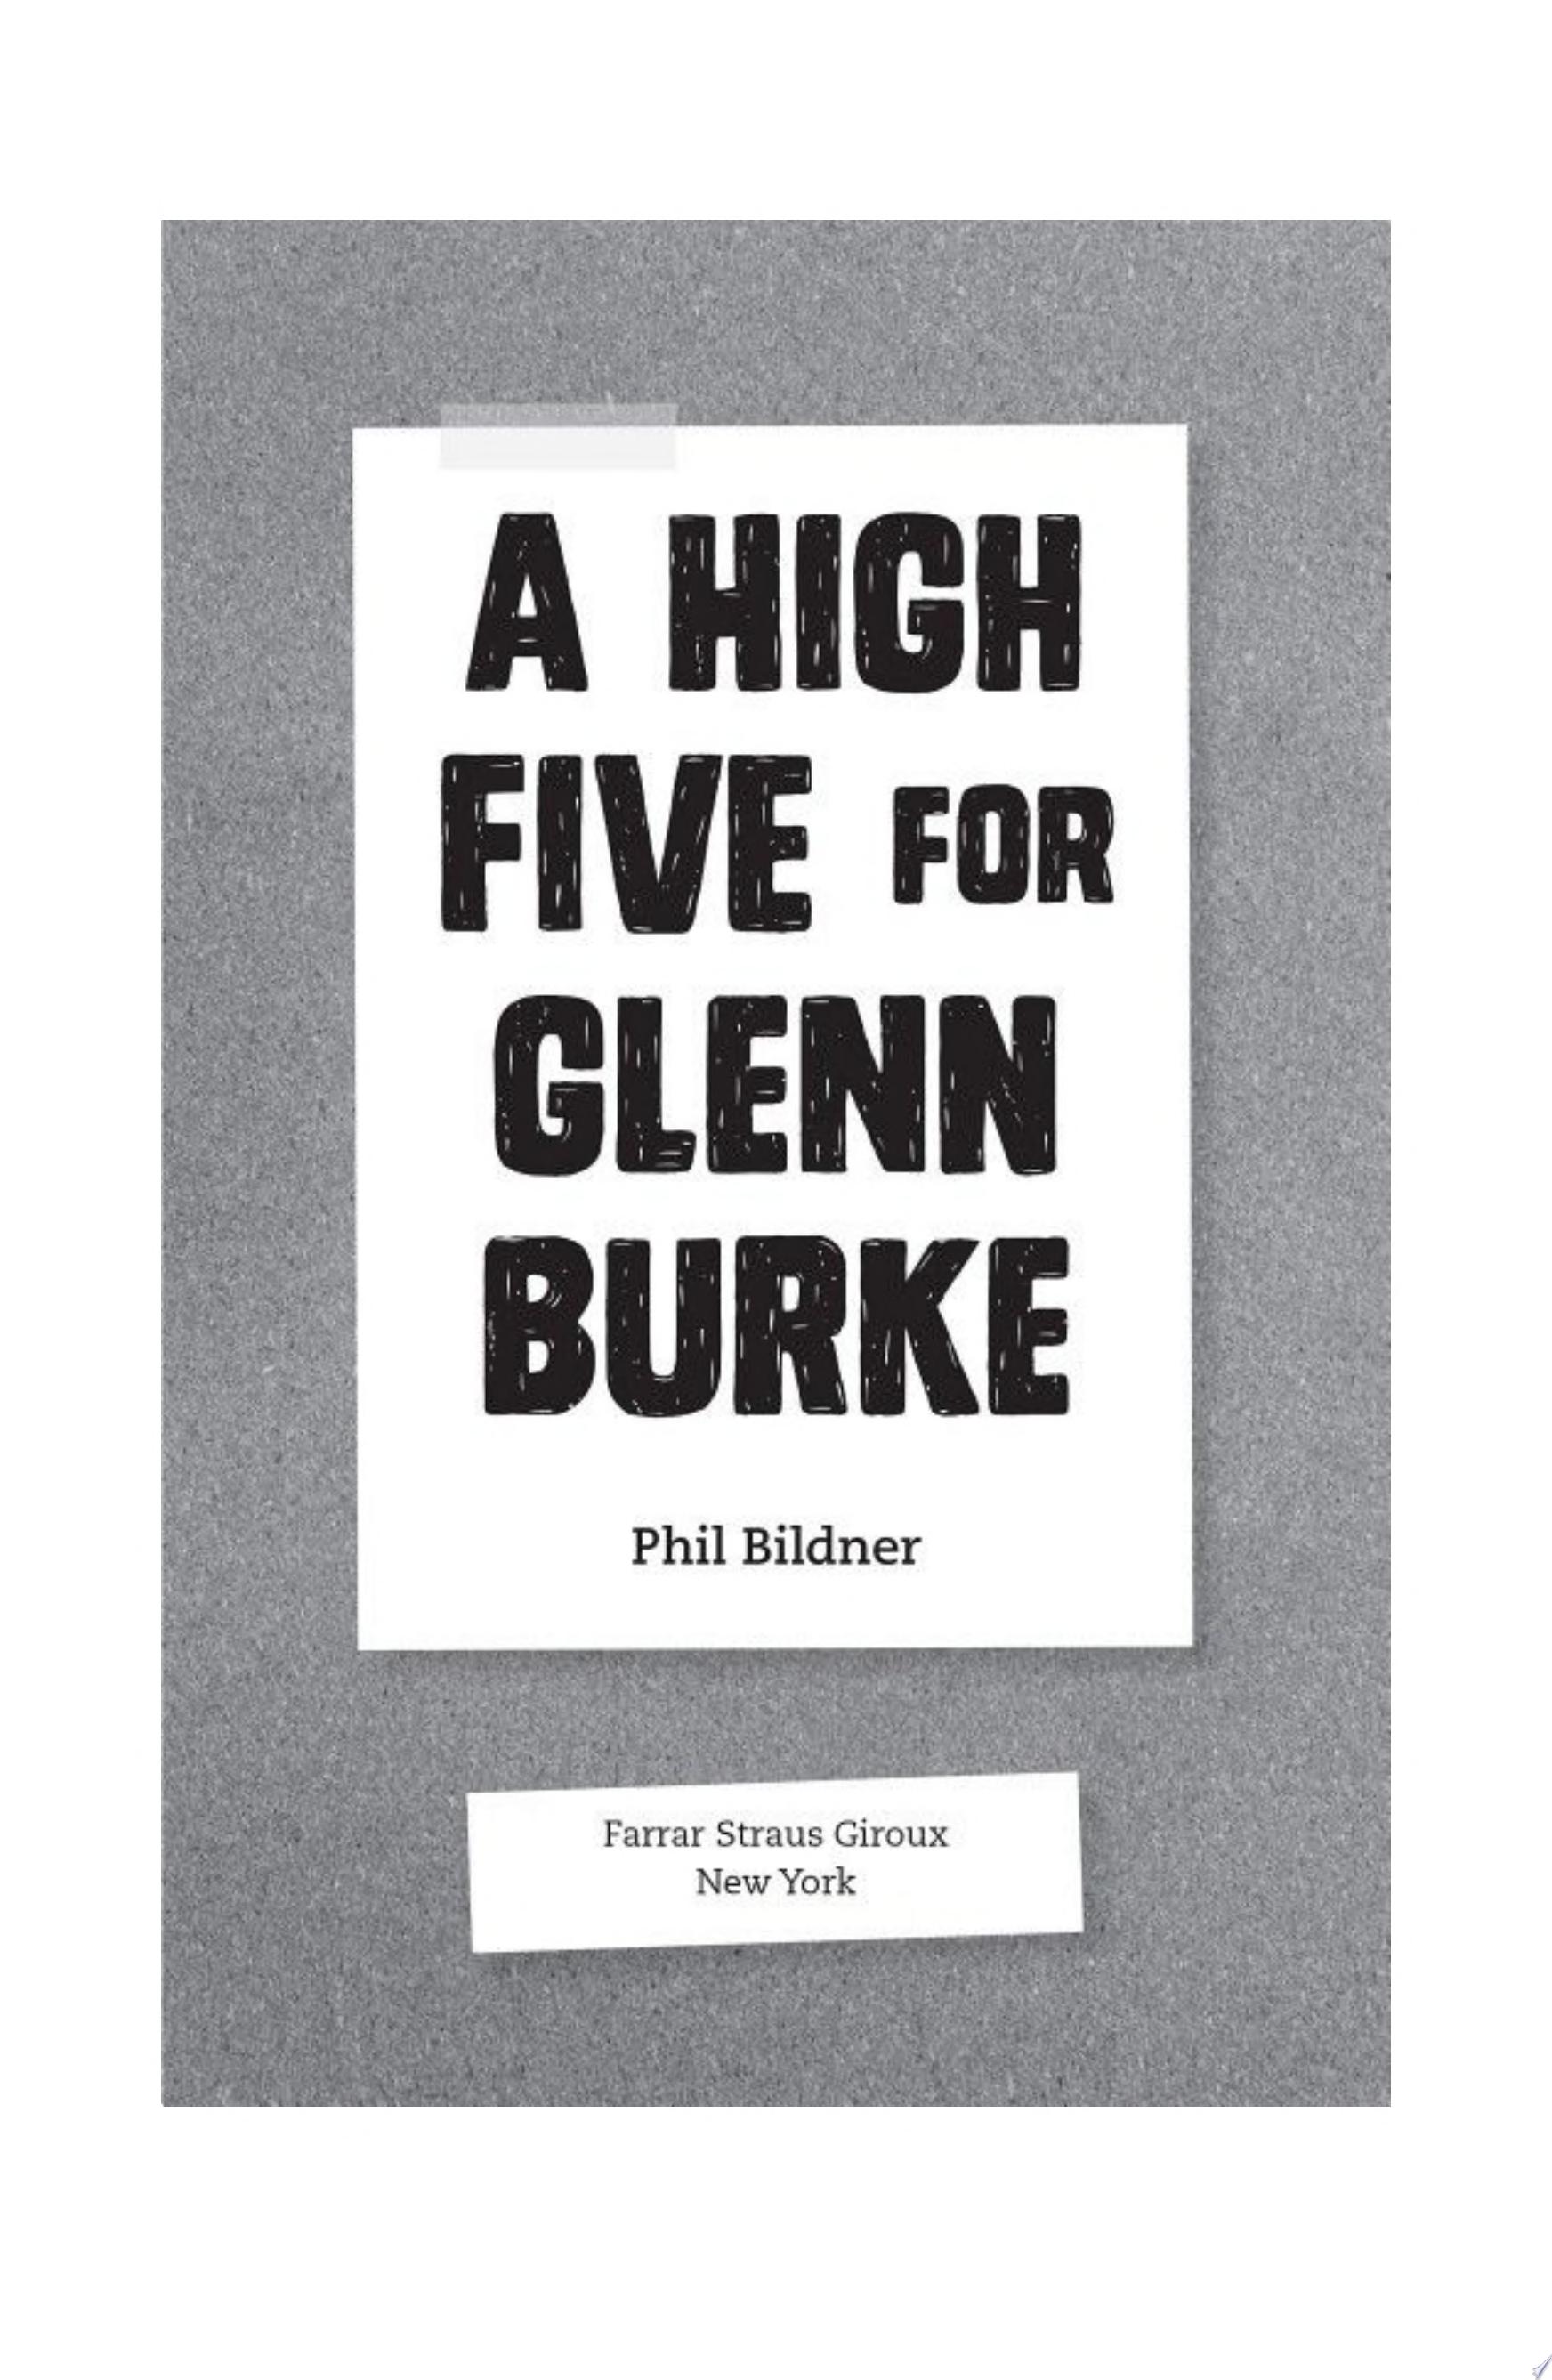 Image for "A High Five for Glenn Burke"